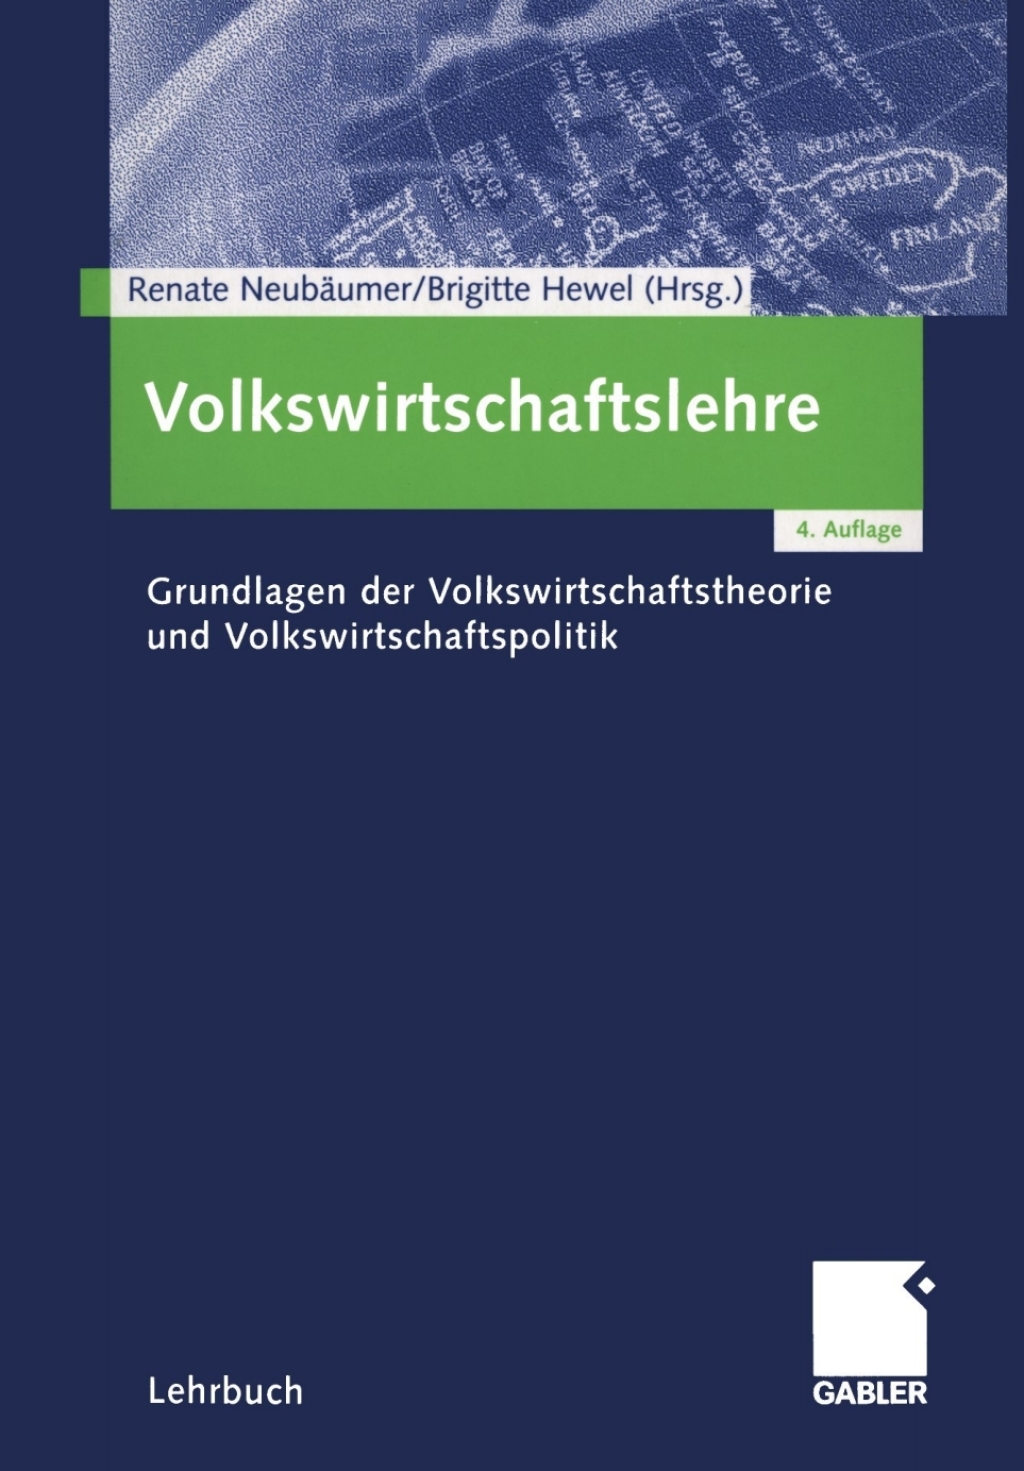 Volkswirtschaftslehre - 4th Edition (eBook)